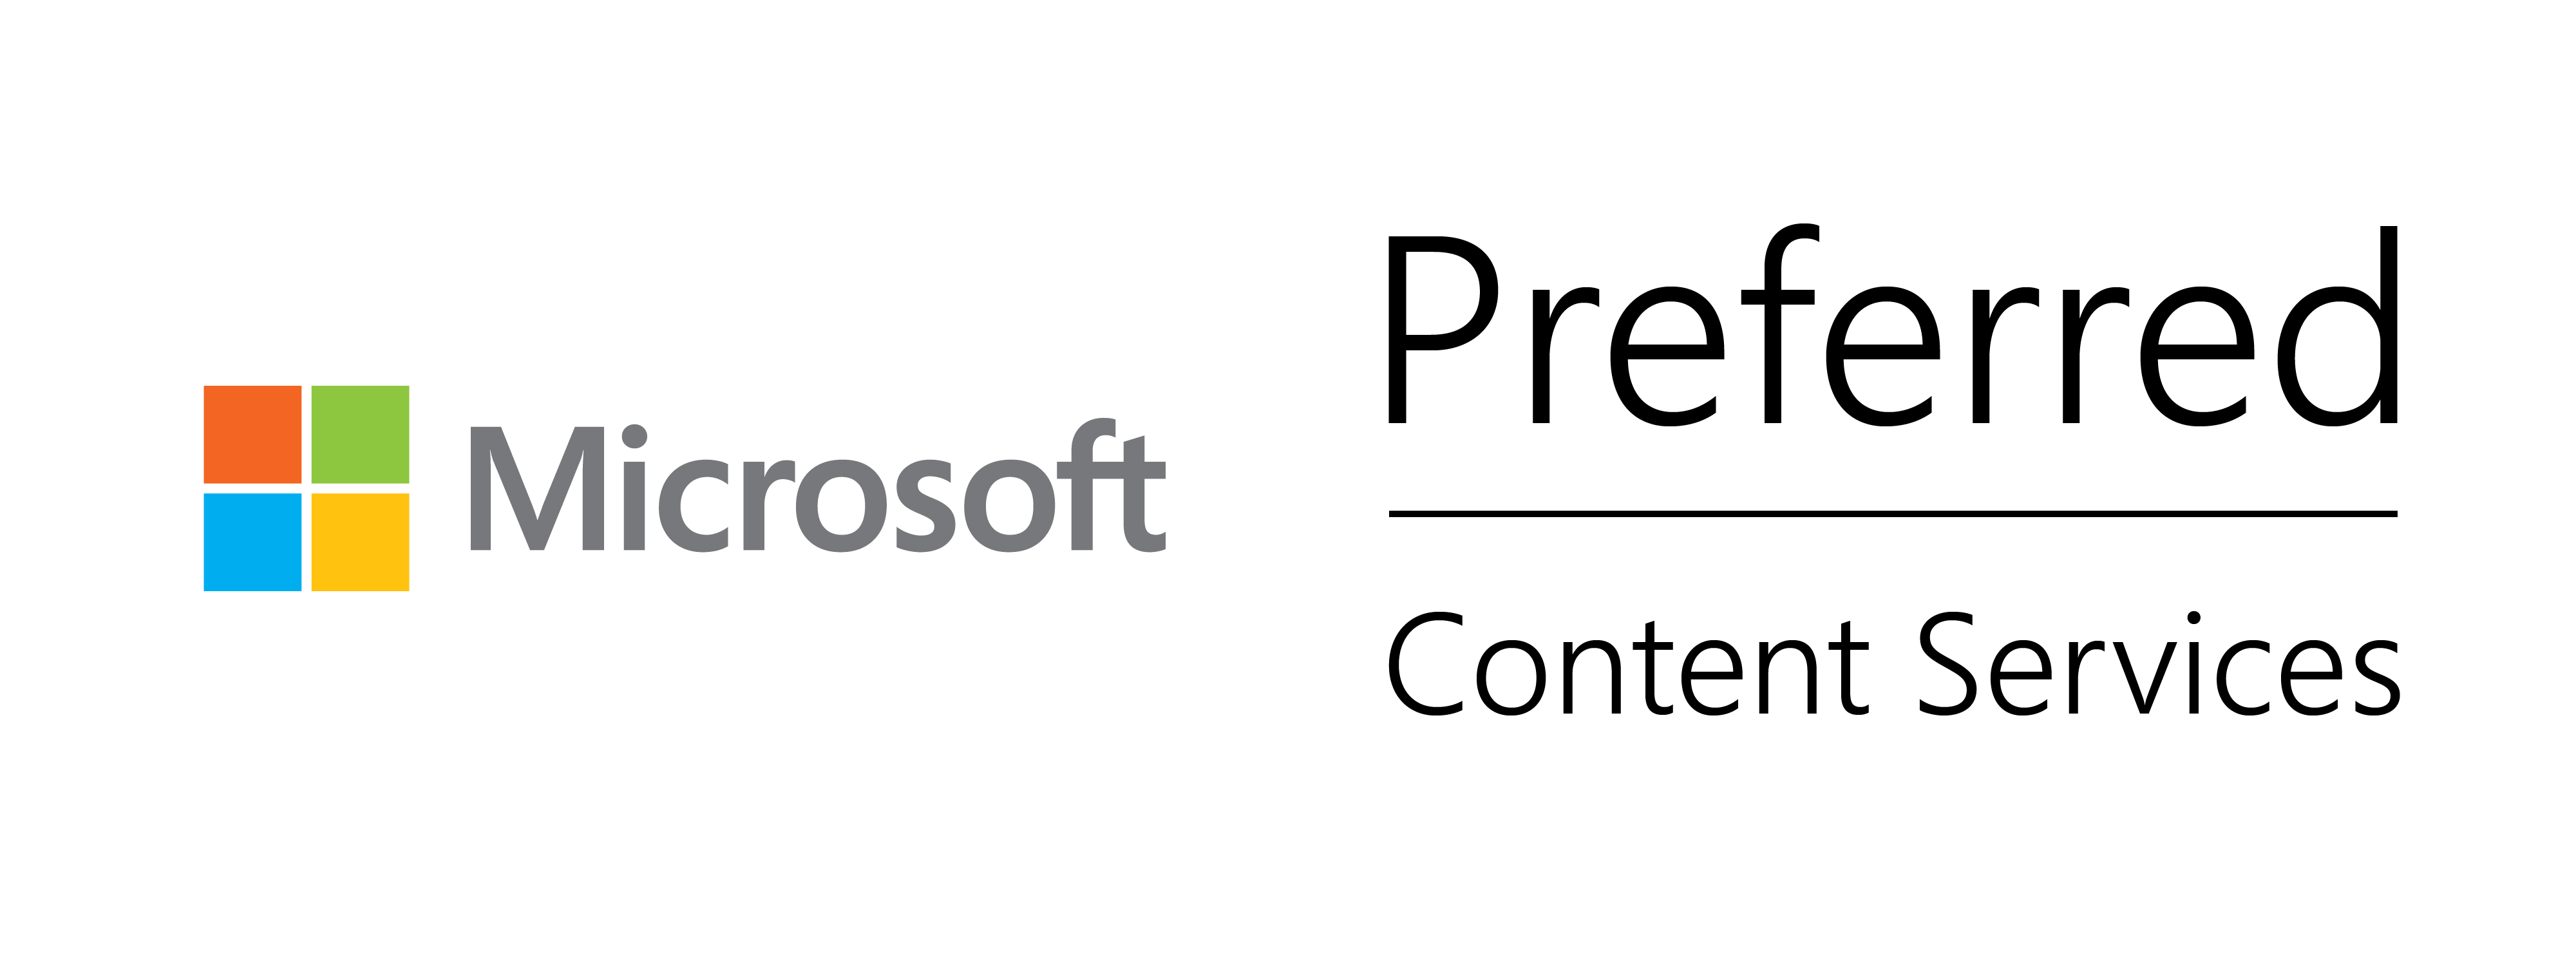 Microsoft_Content_Serv_Preferred_White_4000x1500.png